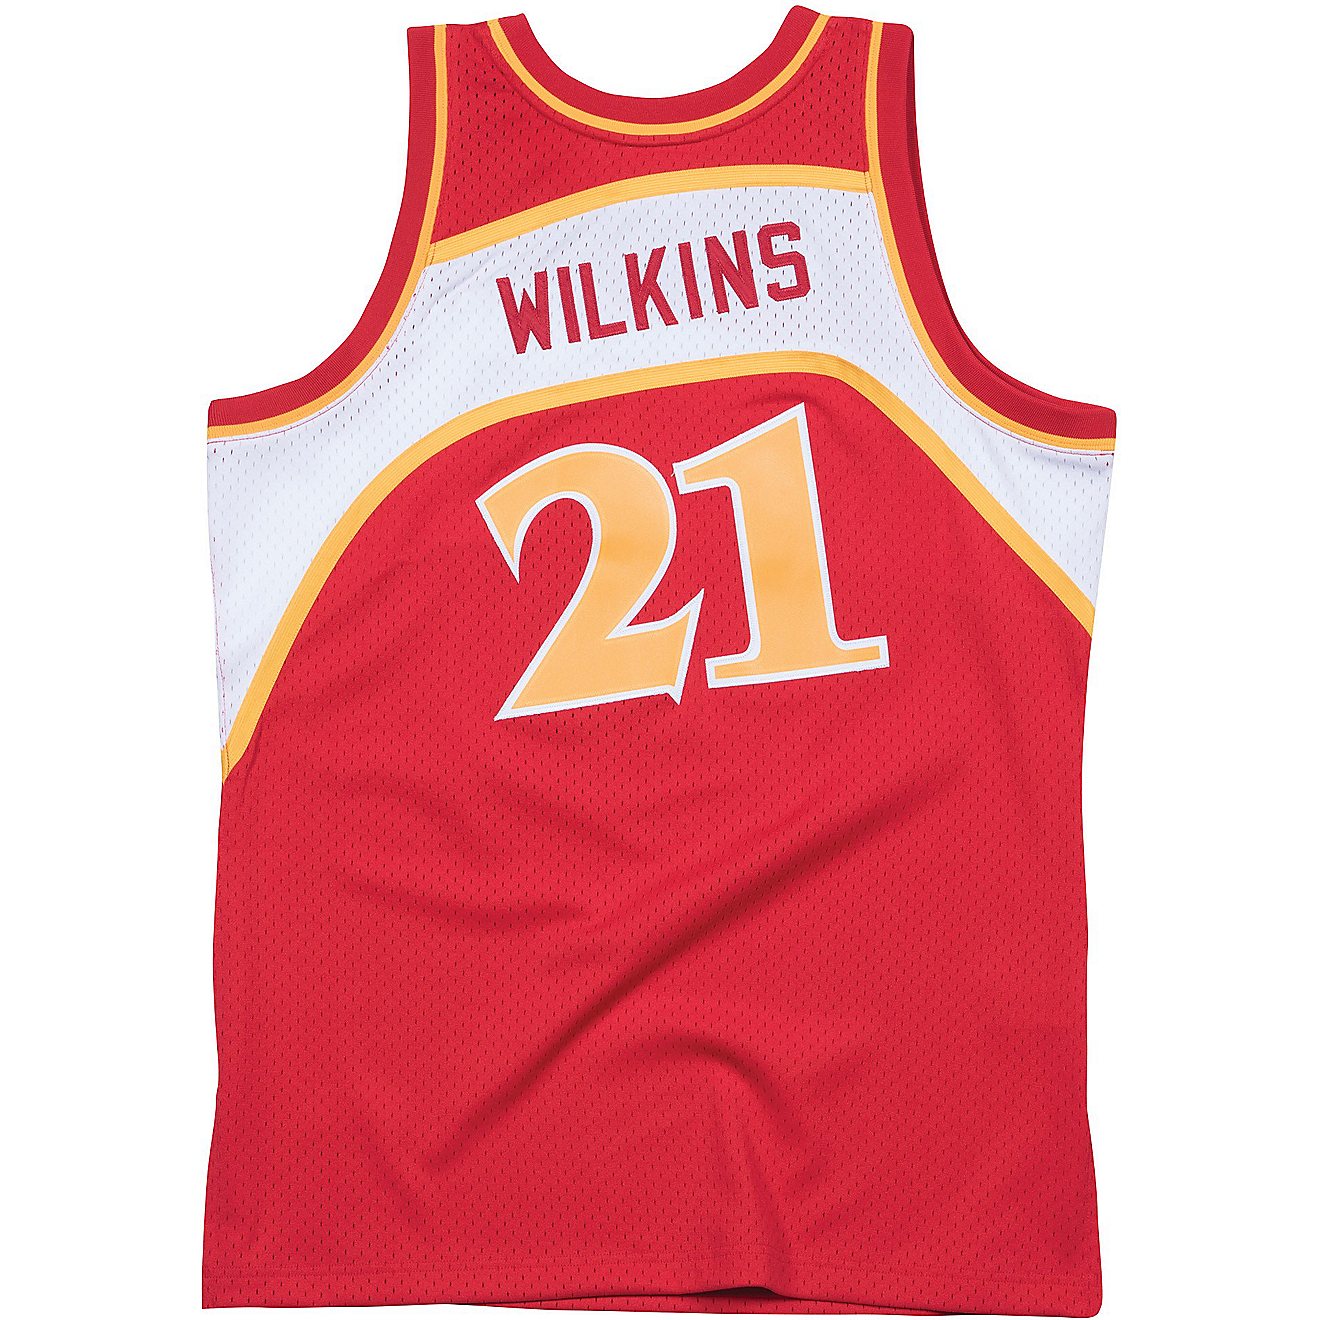 Mitchell & Ness Men's Atlanta Hawks Wilkins Swingman Jersey                                                                      - view number 1